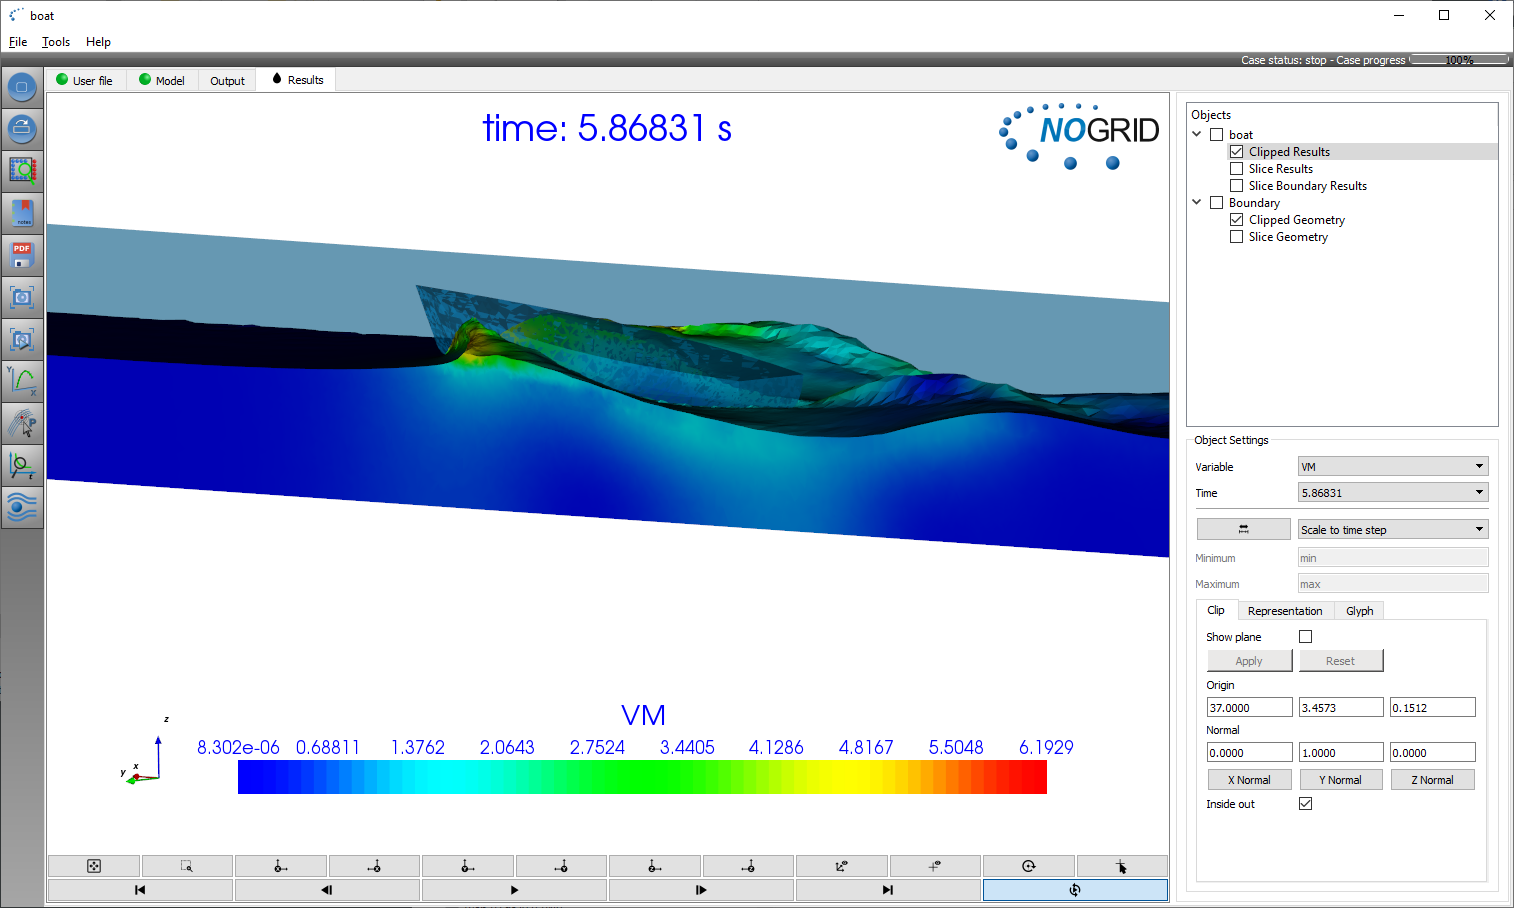 Ergebnis der Simulation beschleunigtes Boot in NOGRID Software